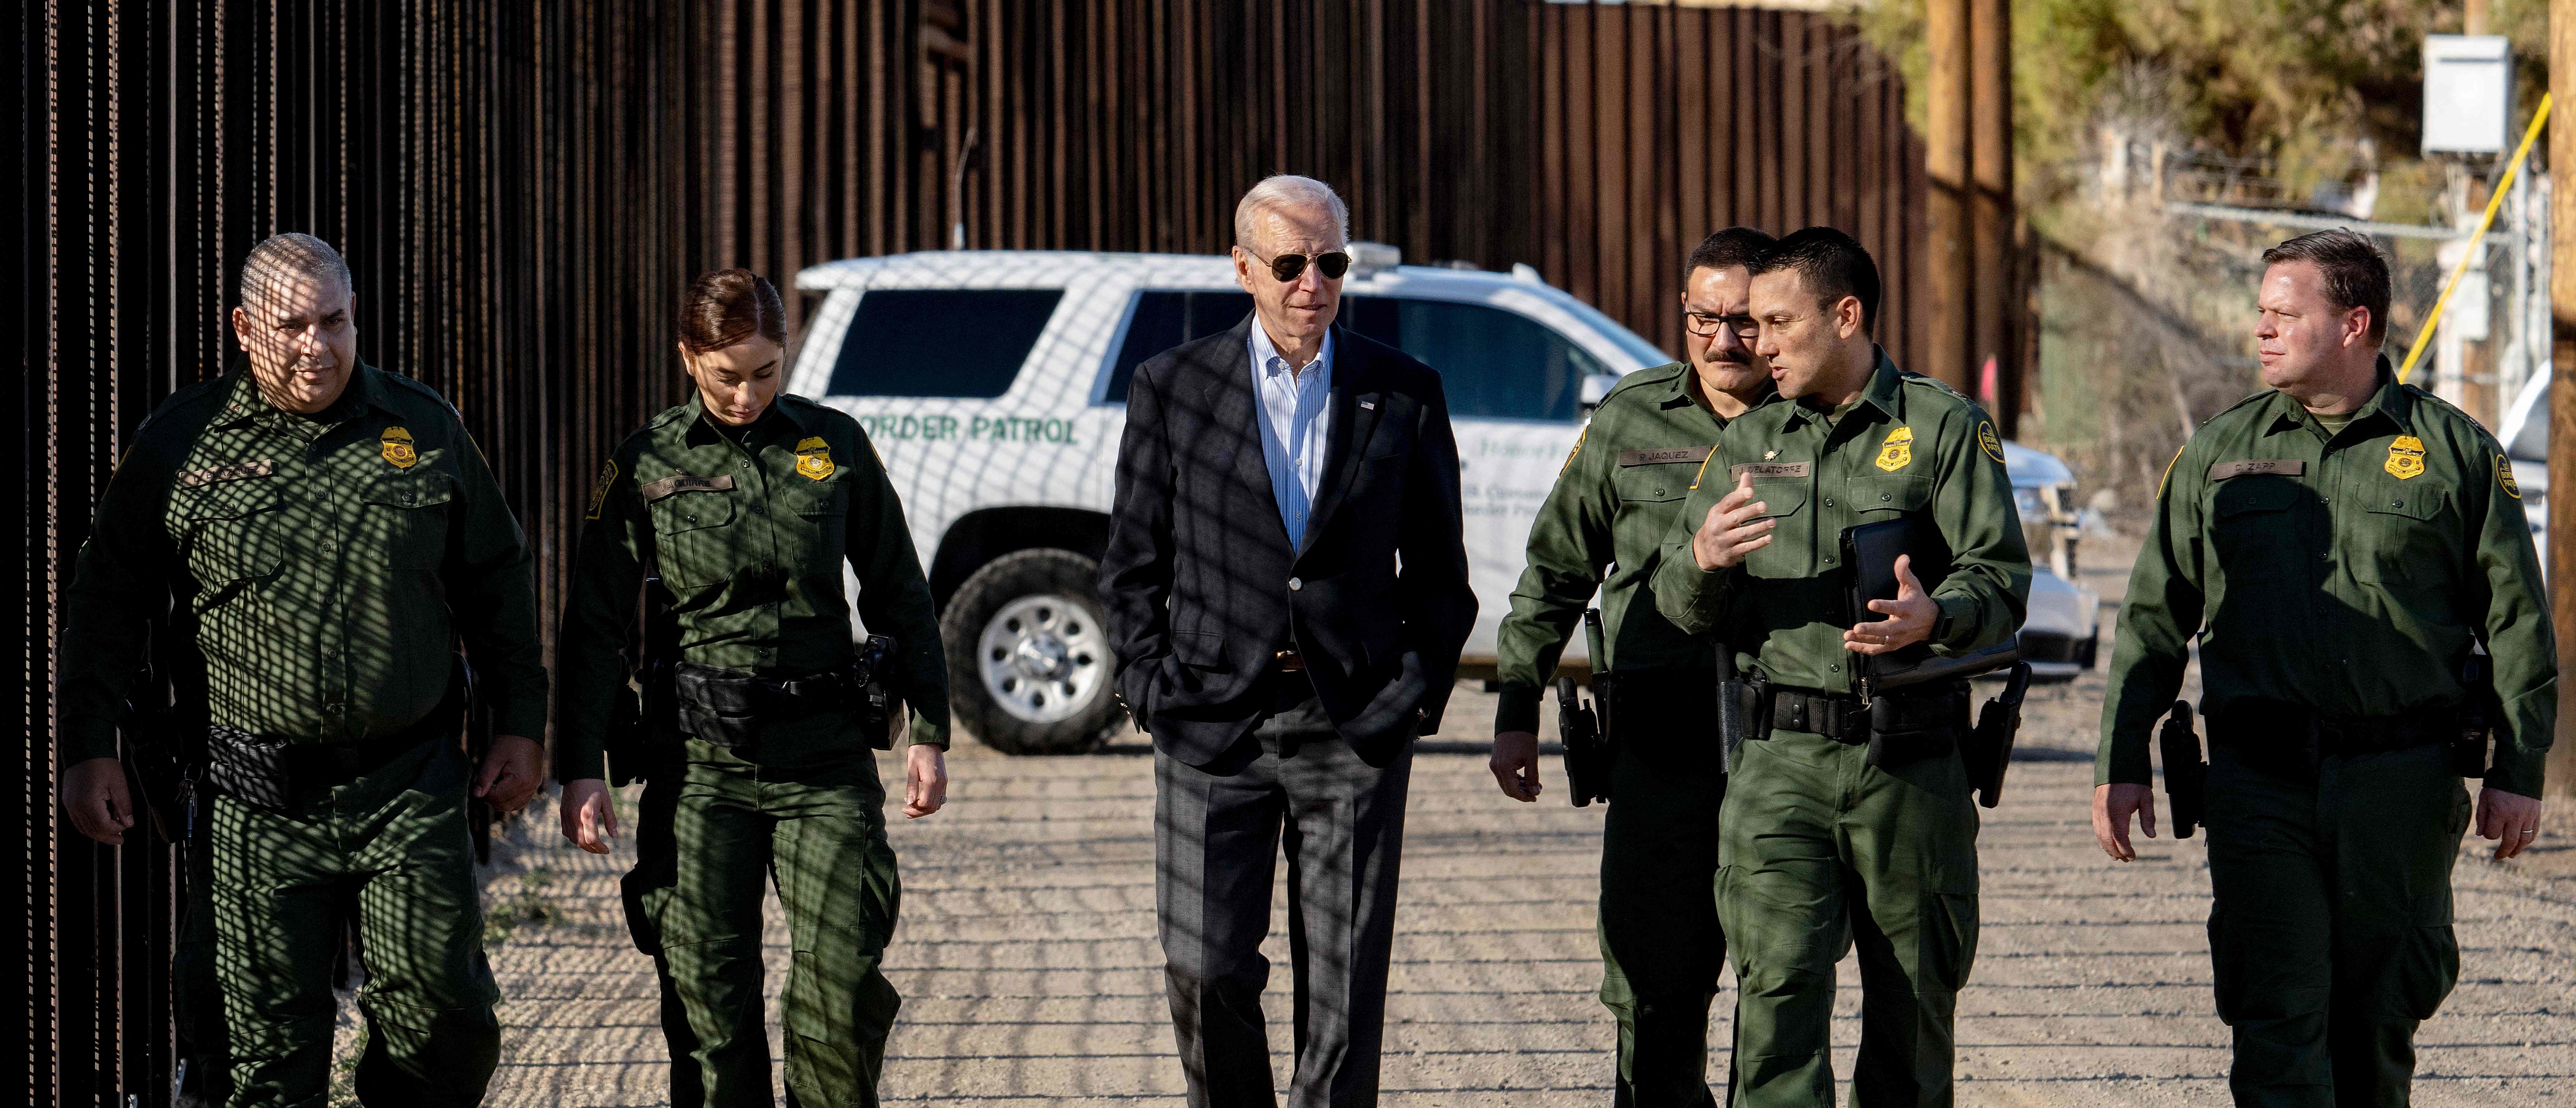 Biden zegt dat de Republikeinen van het Huis willen bezuinigen op de financiering van de grensbeveiliging